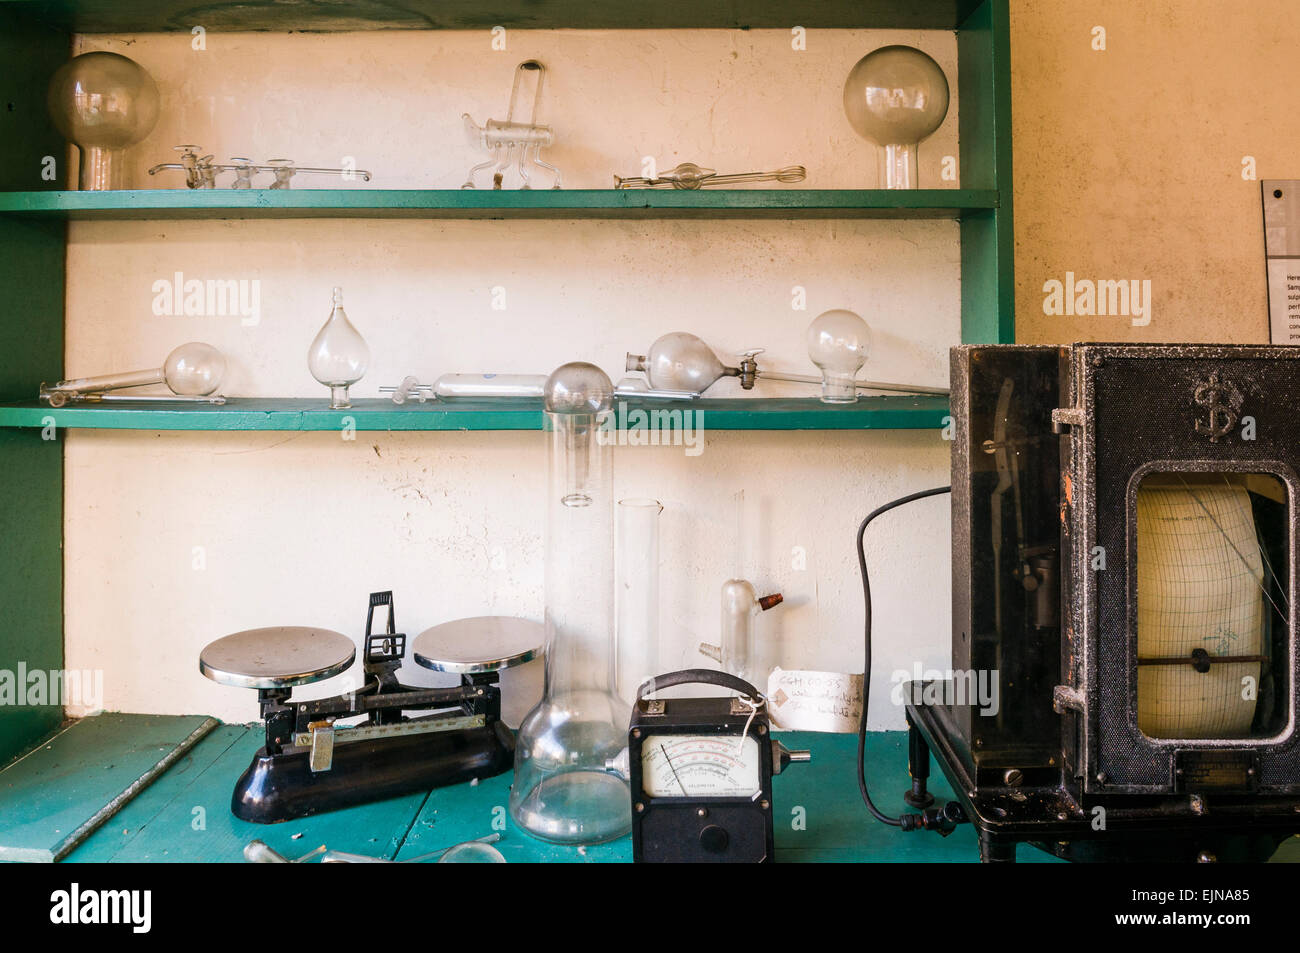 Un vieux laboratoire avec des échelles de mesure, l'équipement, des récipients en verre et les vannes Banque D'Images